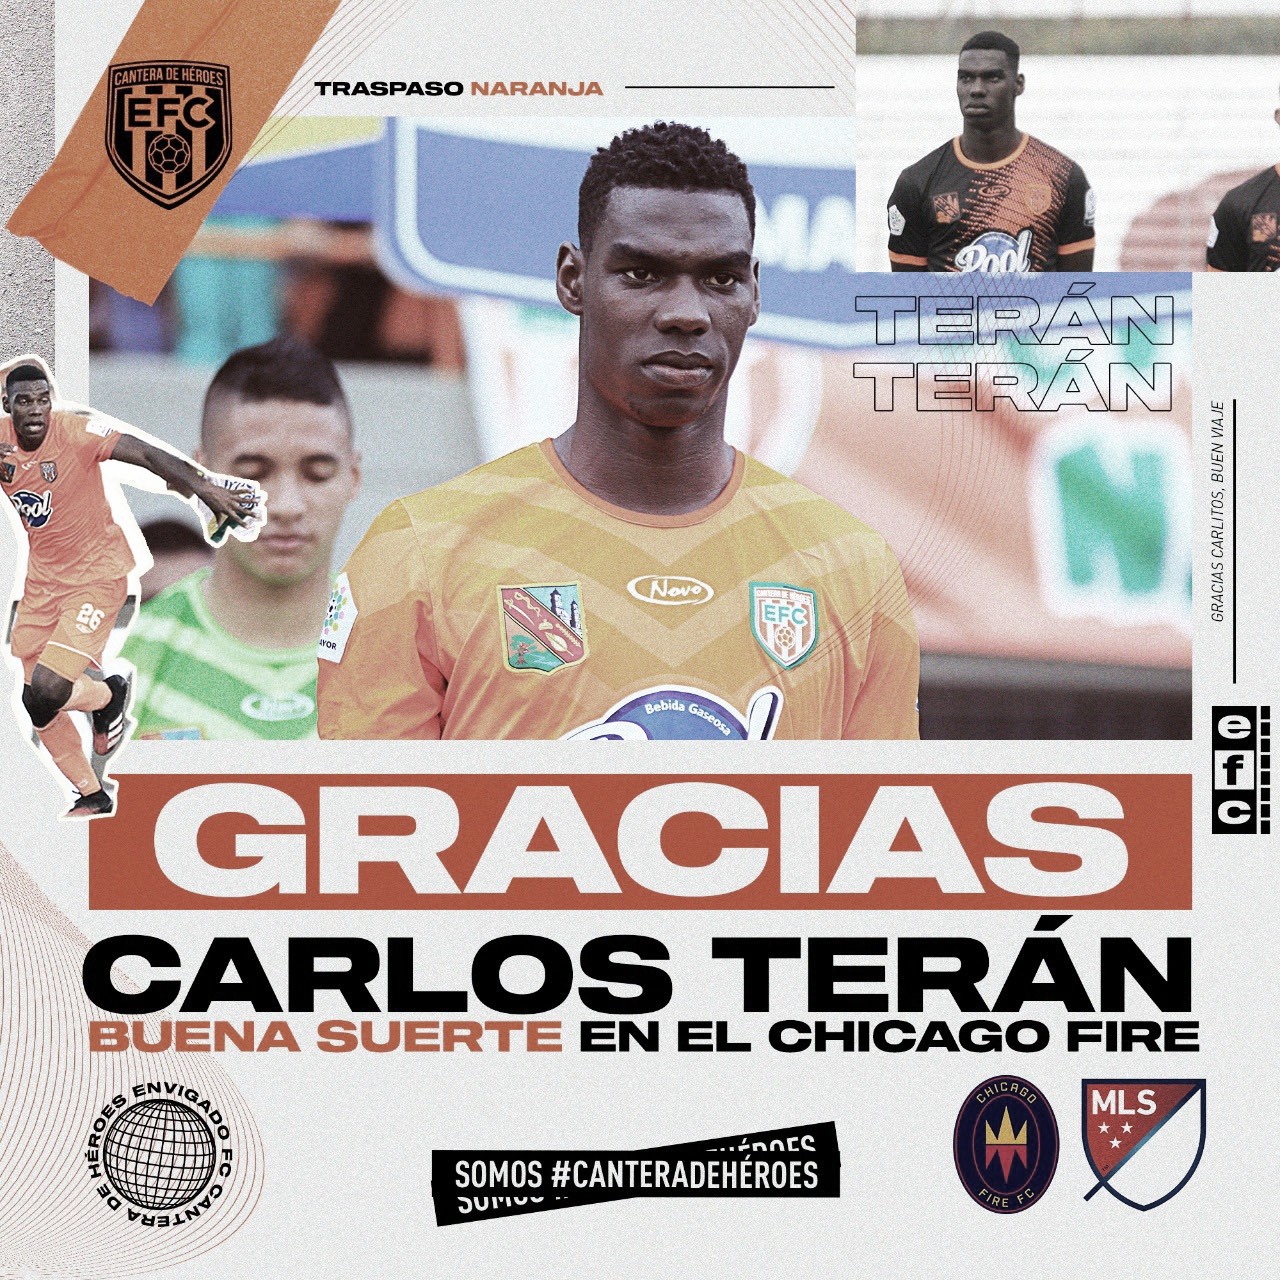 Cantera de exportación y orgullo: Carlos
Terán rumbo a Chicago Fire de la MLS